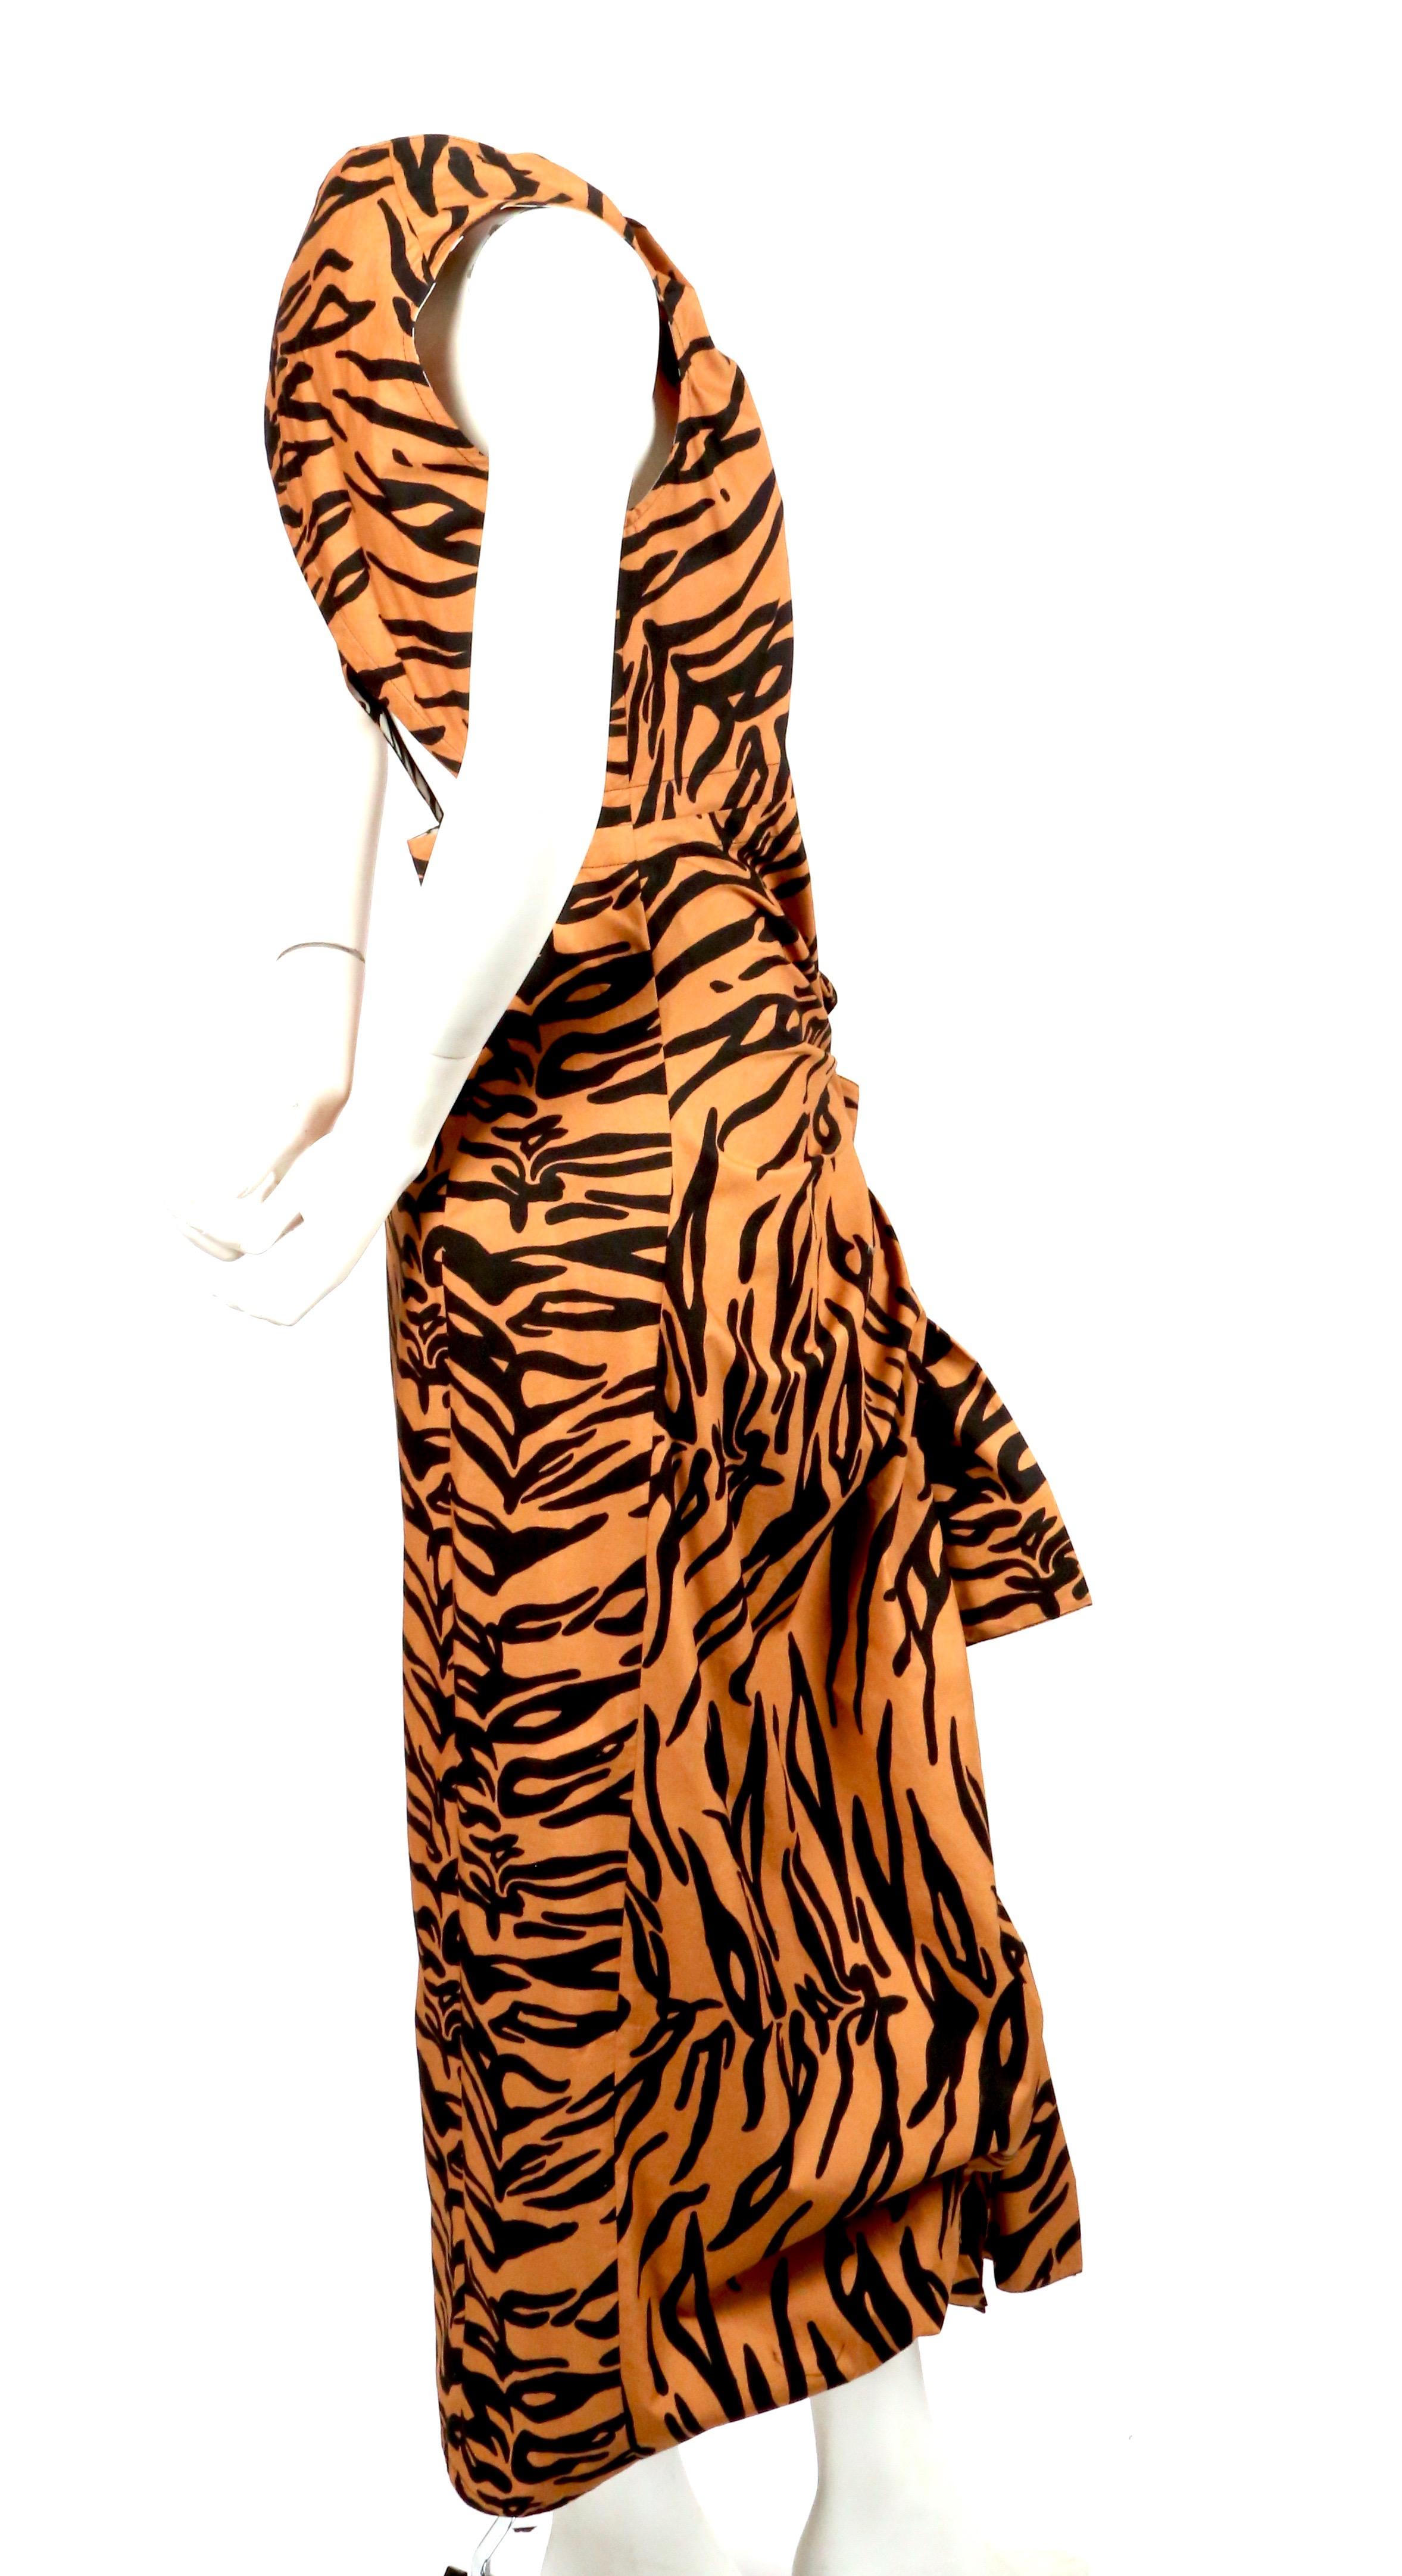 Robe en coton imprimé tigre avec liens drapés et dos ouvert, conçue par Phoebe Philo pour Celine. Le Label est étiqueté comme une taille française 38. Les mesures sont très difficiles à prendre pour cette pièce, mais elle n'a pas été coupée sur le